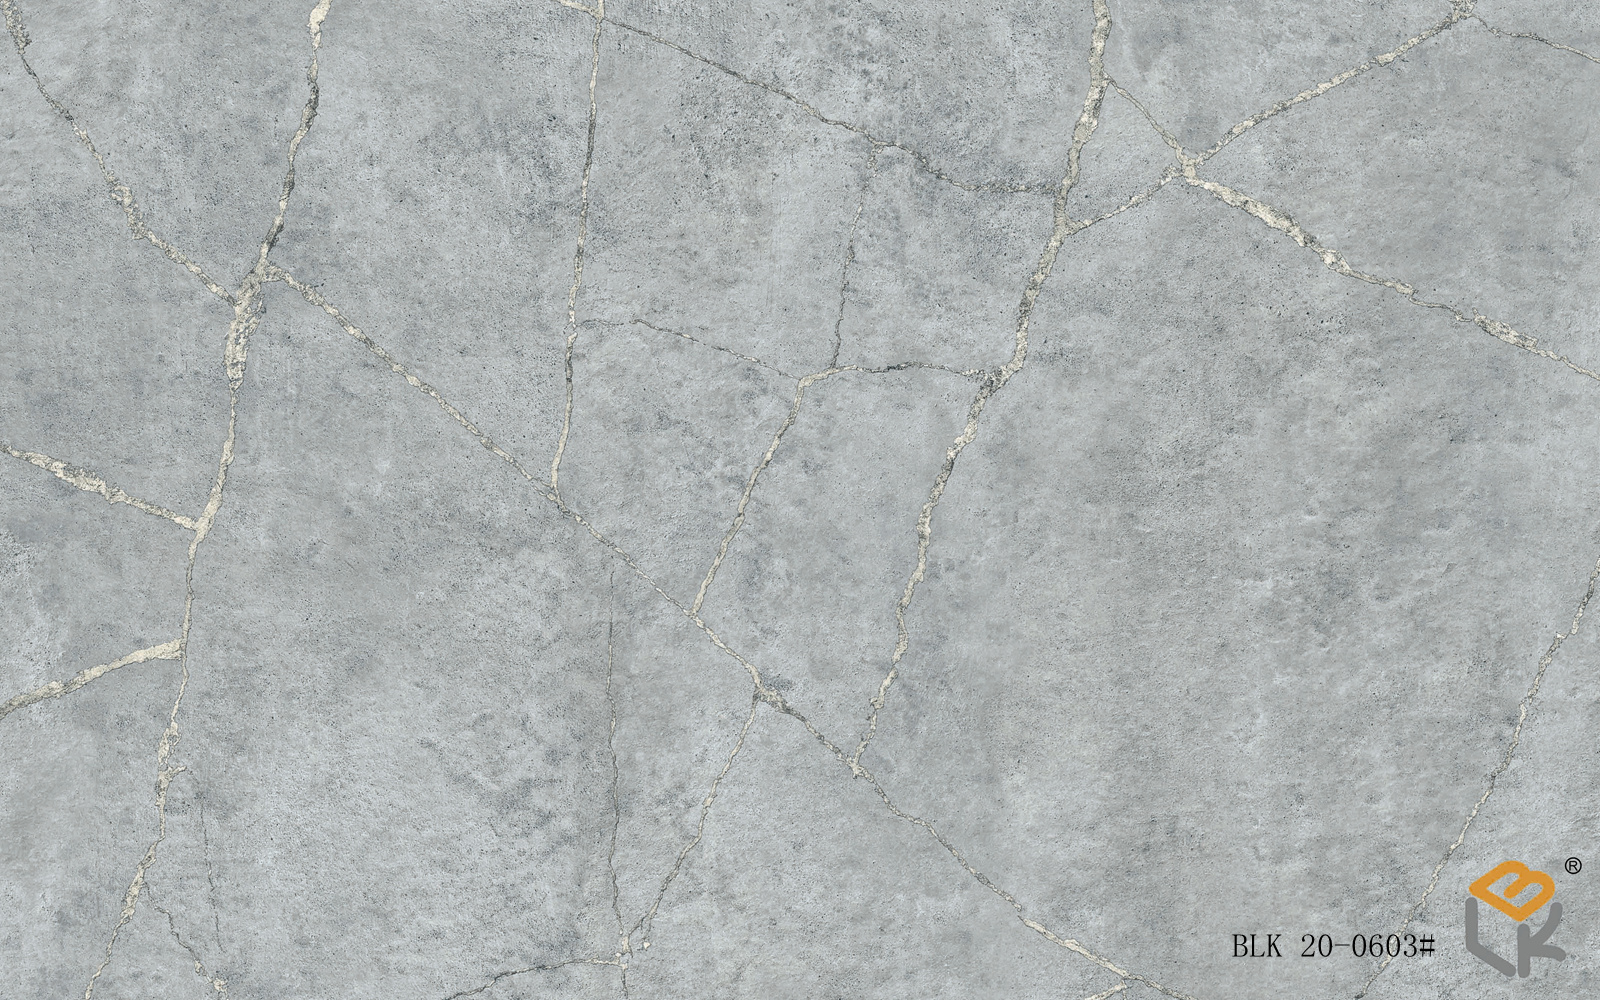 宝利康阿里斯石纹银色系列三聚氰胺饰面多层板